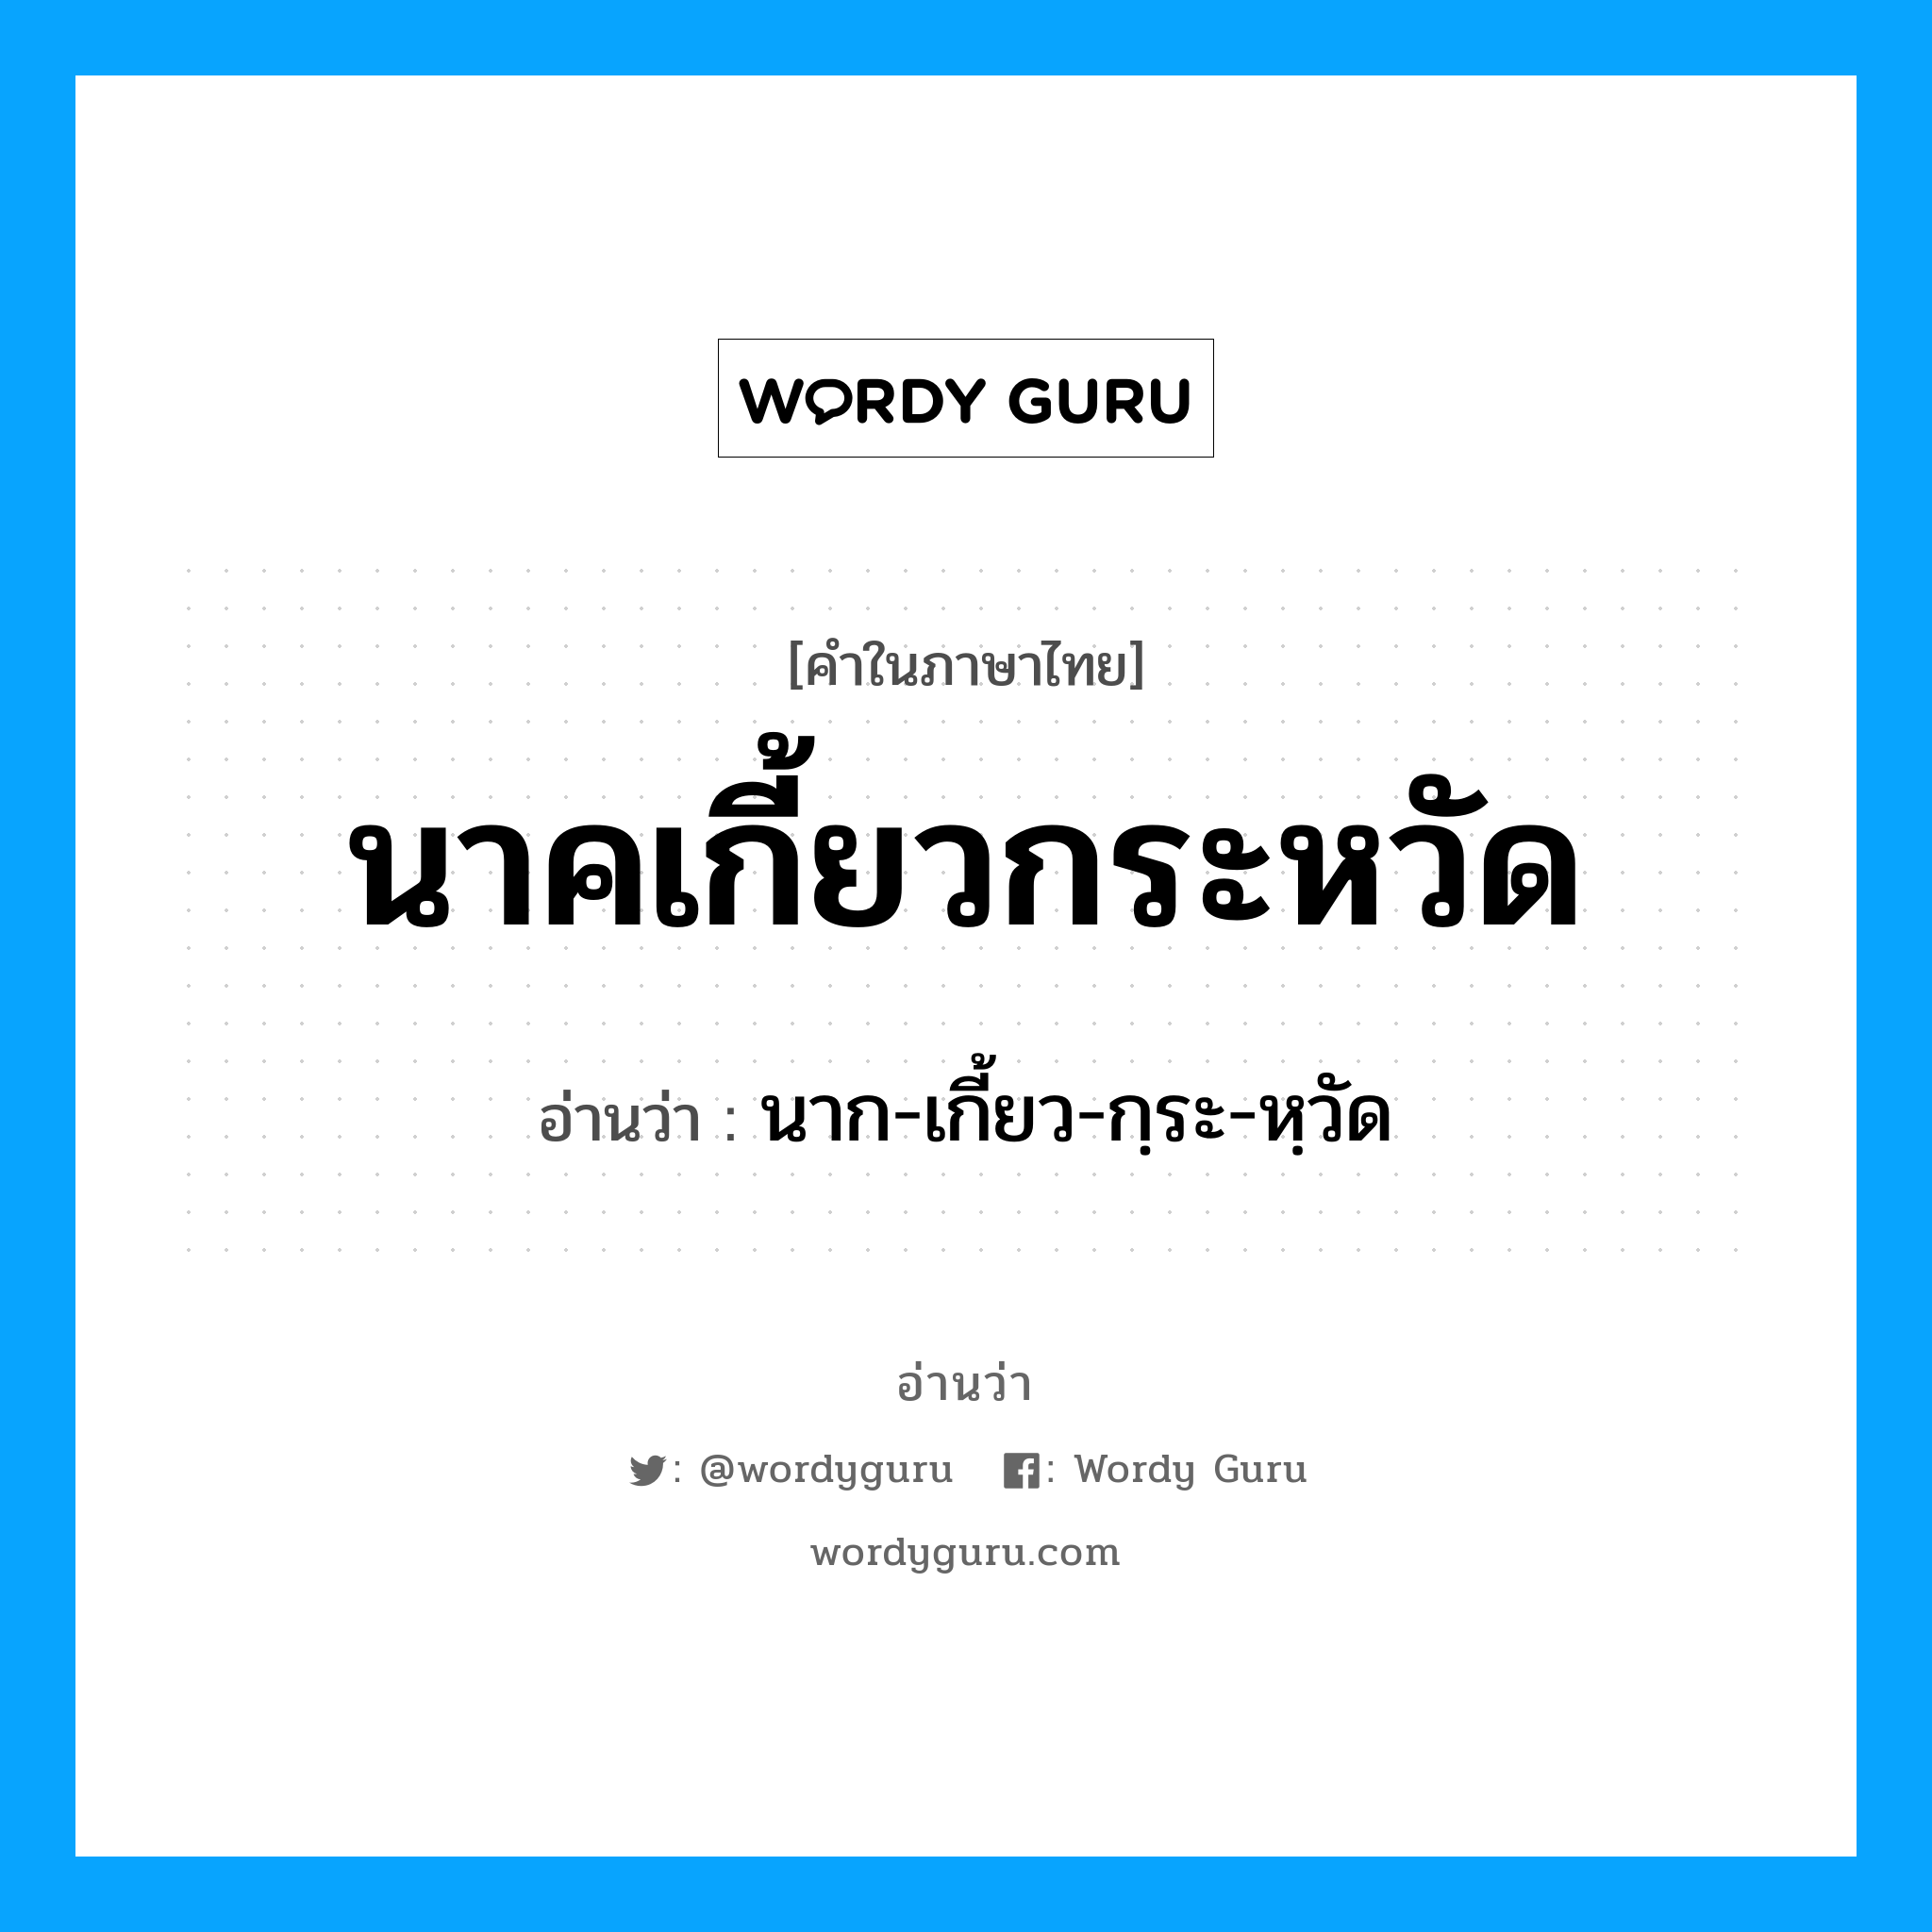 นาก-เกี้ยว-กฺระ-หฺวัด เป็นคำอ่านของคำไหน?, คำในภาษาไทย นาก-เกี้ยว-กฺระ-หฺวัด อ่านว่า นาคเกี้ยวกระหวัด